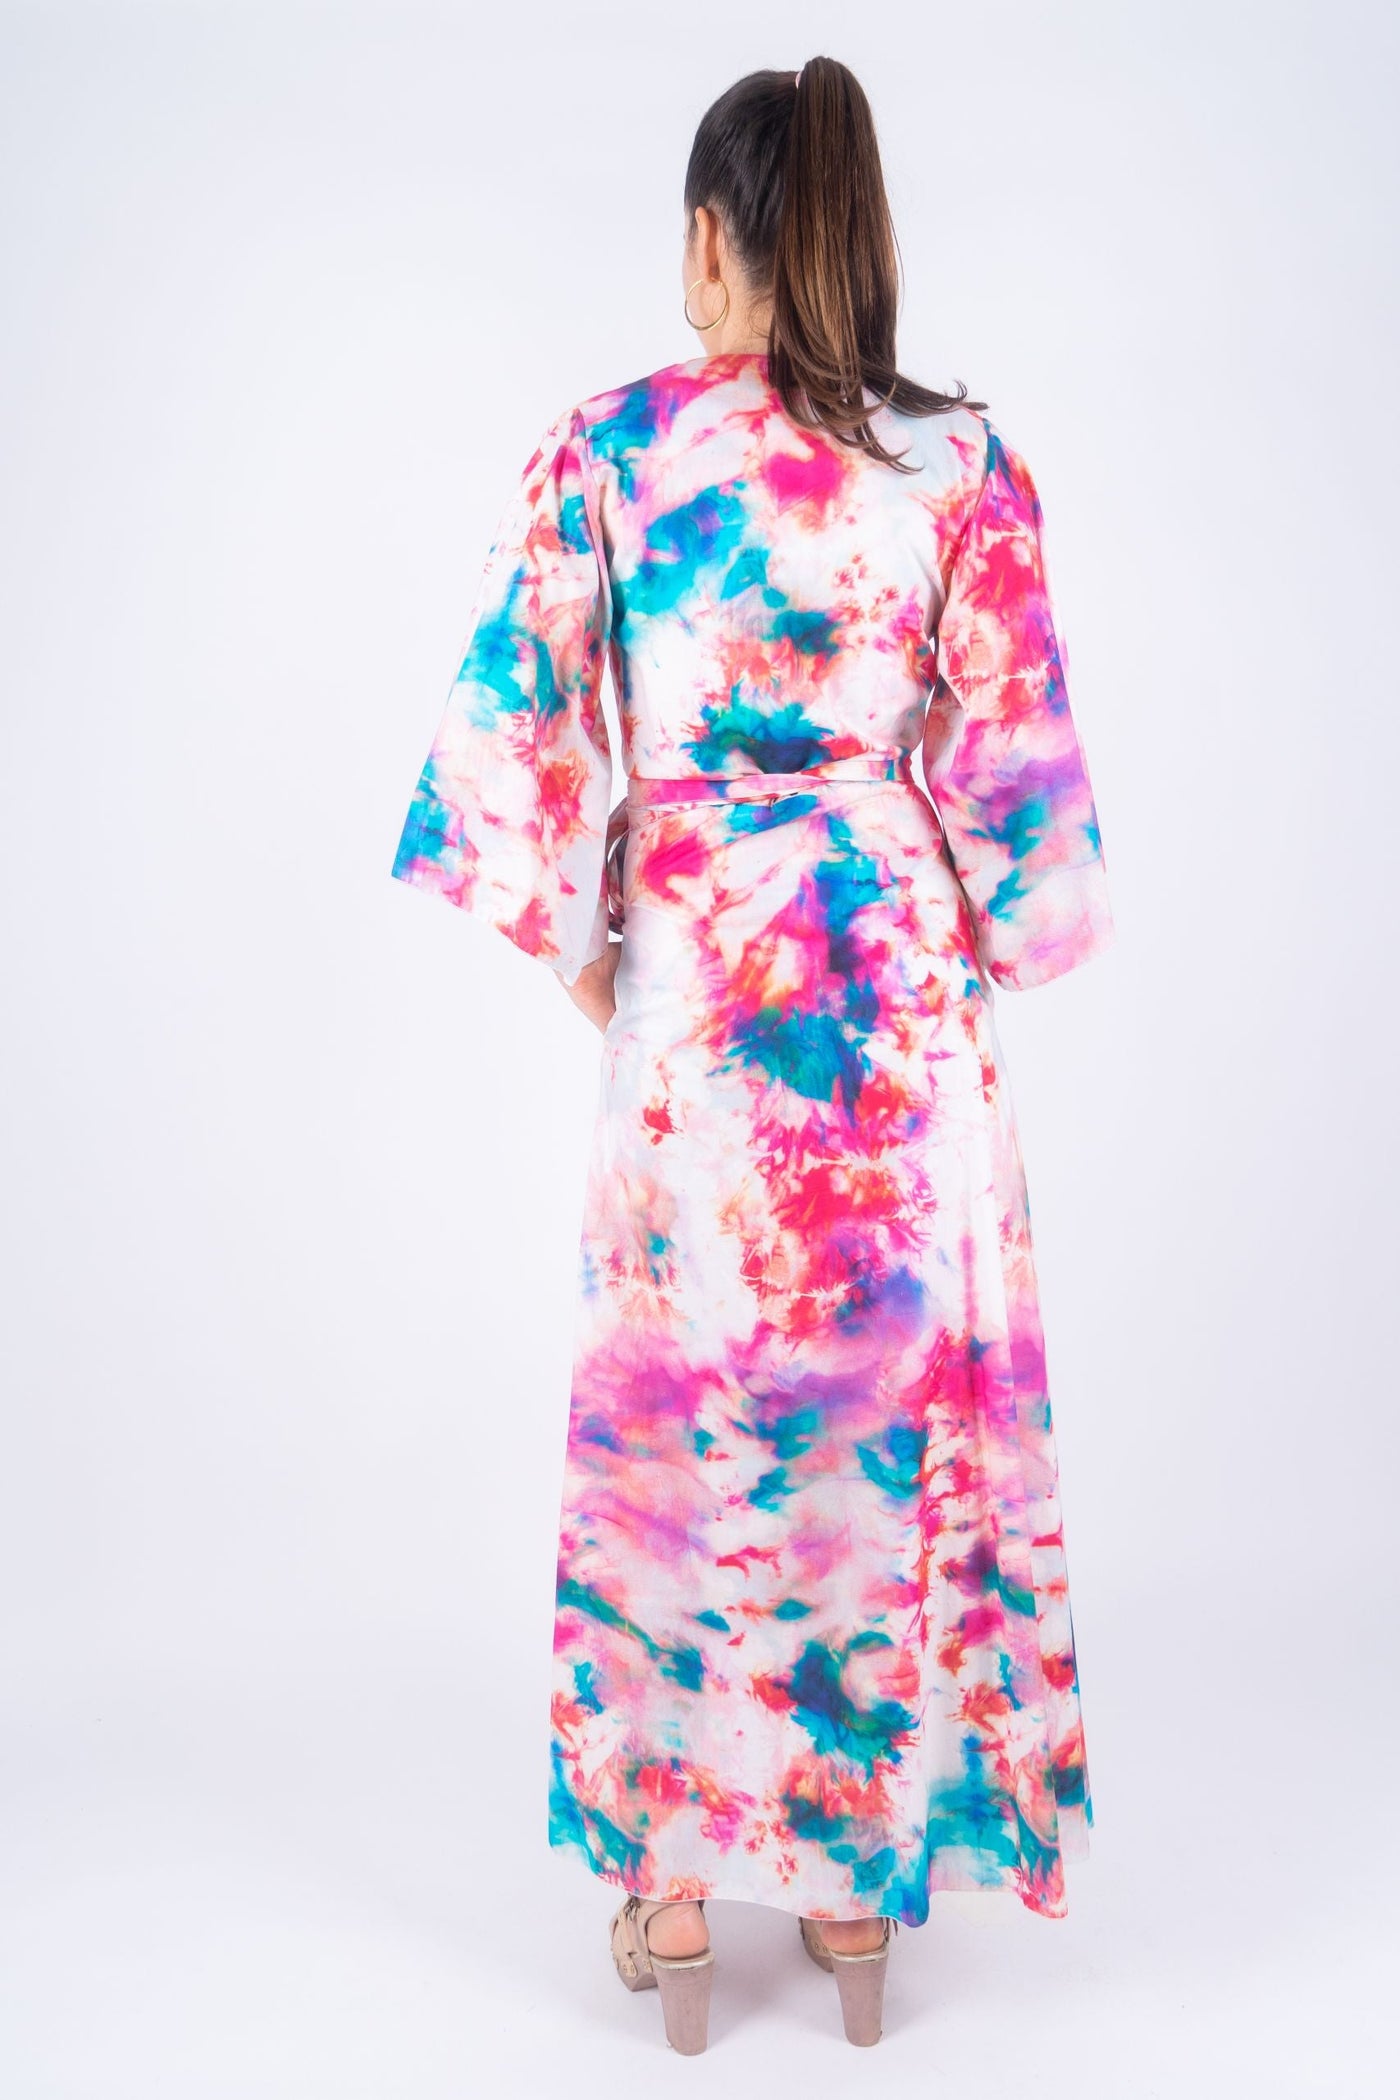 REVERIE Long Gown by KonaCoco